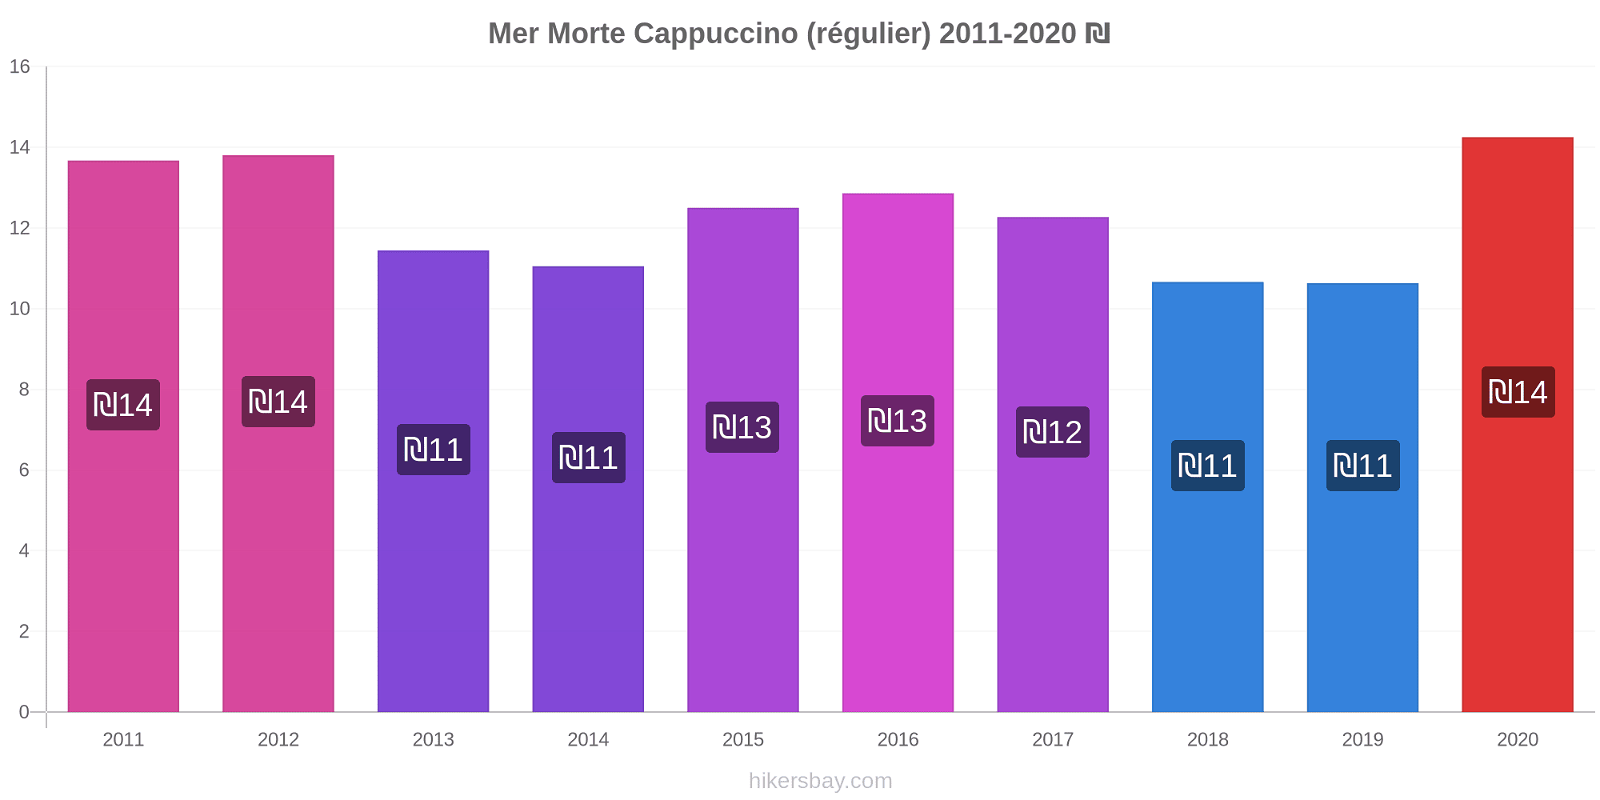 Mer Morte changements de prix Cappuccino (régulier) hikersbay.com